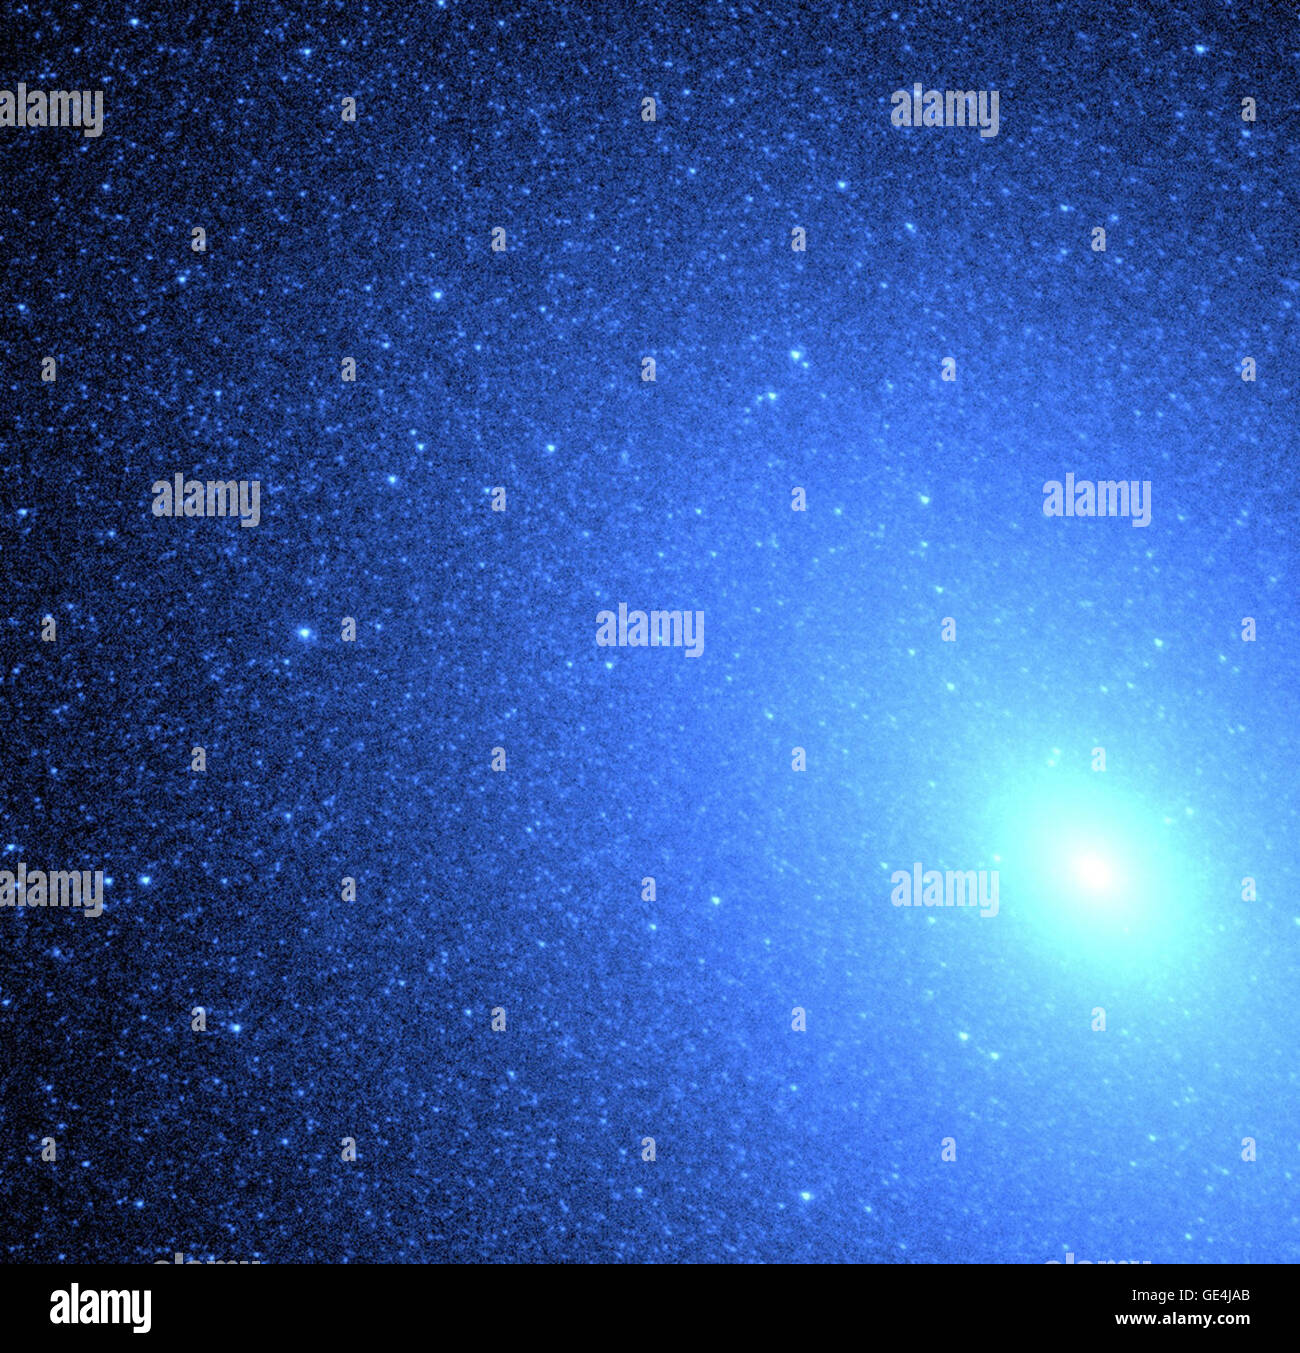 (26 octobre 1999) le télescope spatial Hubble a permis aux astronomes de résolution exquis à résoudre, pour la première fois, un bain blue stars profondément à l'intérieur une galaxie elliptique. L'essaim de près de 8 000 étoiles bleu ressemble à une tempête de neige près de la core (en bas à droite) de la galaxie voisine M32, situé à 2,5 millions d'années-lumière dans la constellation d'Andromède. Hubble confirme que la lumière uv provient d'une population d'une chaleur qui brûlent de l'hélium à un stade tardif de leur vie. Contrairement au soleil, qui brûle de l'hydrogène en hélium, ces vieilles étoiles épuisé leur centrale hyd Banque D'Images